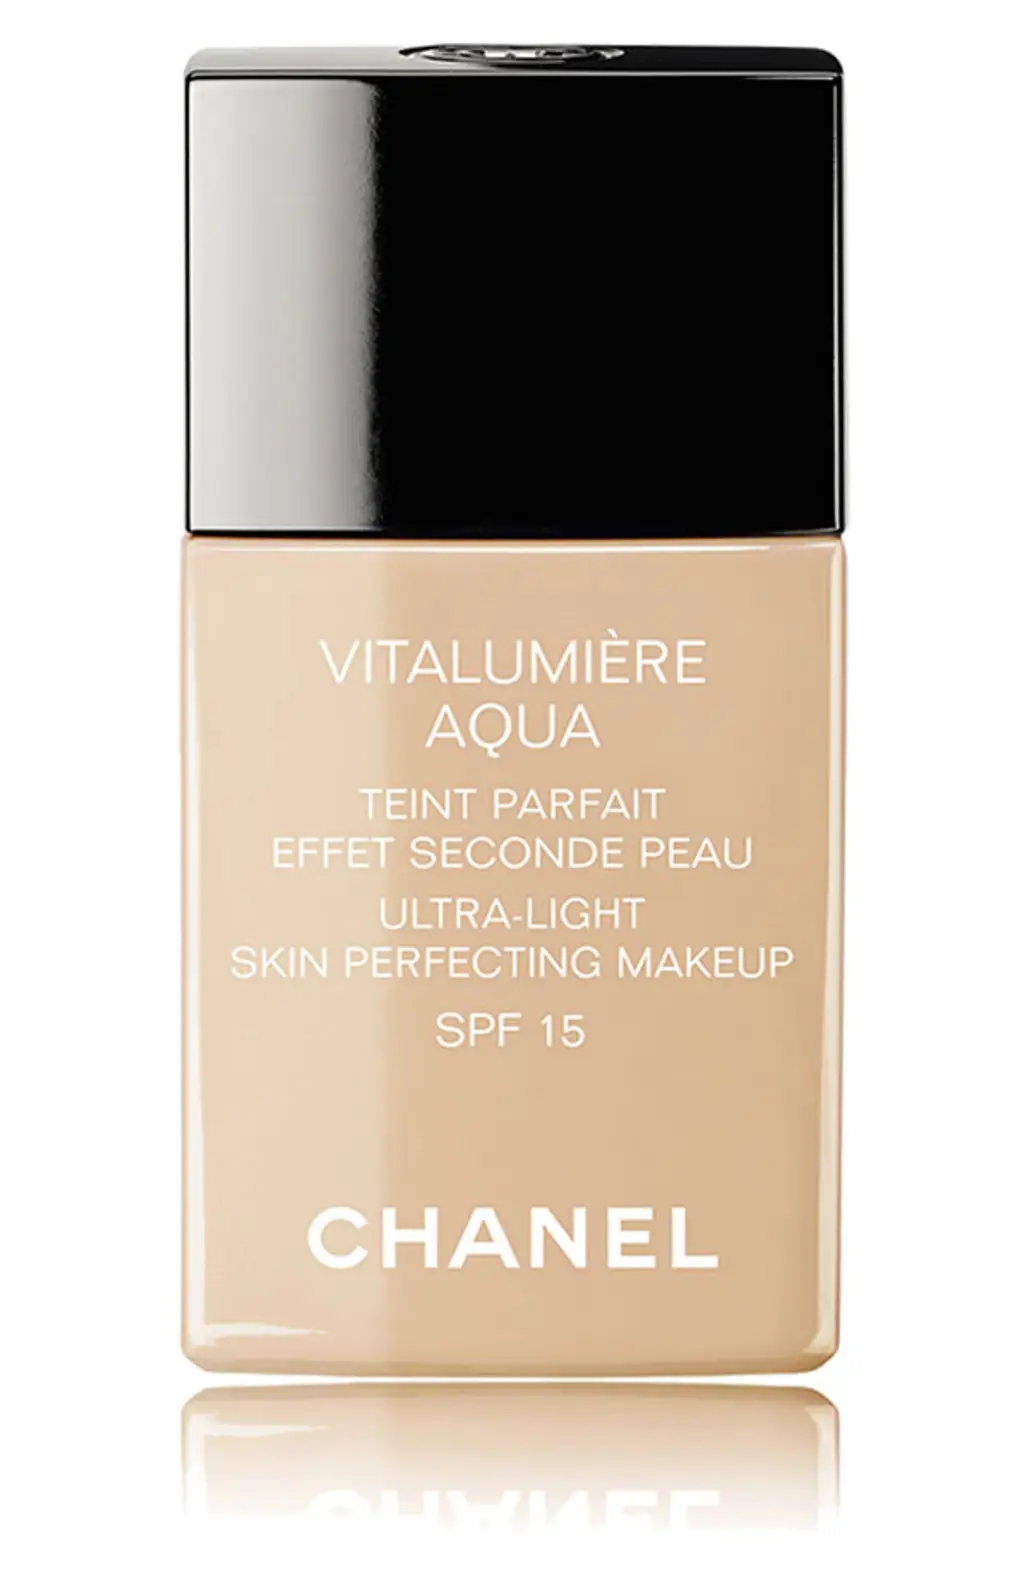 Chanel Vitalumiere Aqua Skin Perfecting Makeup